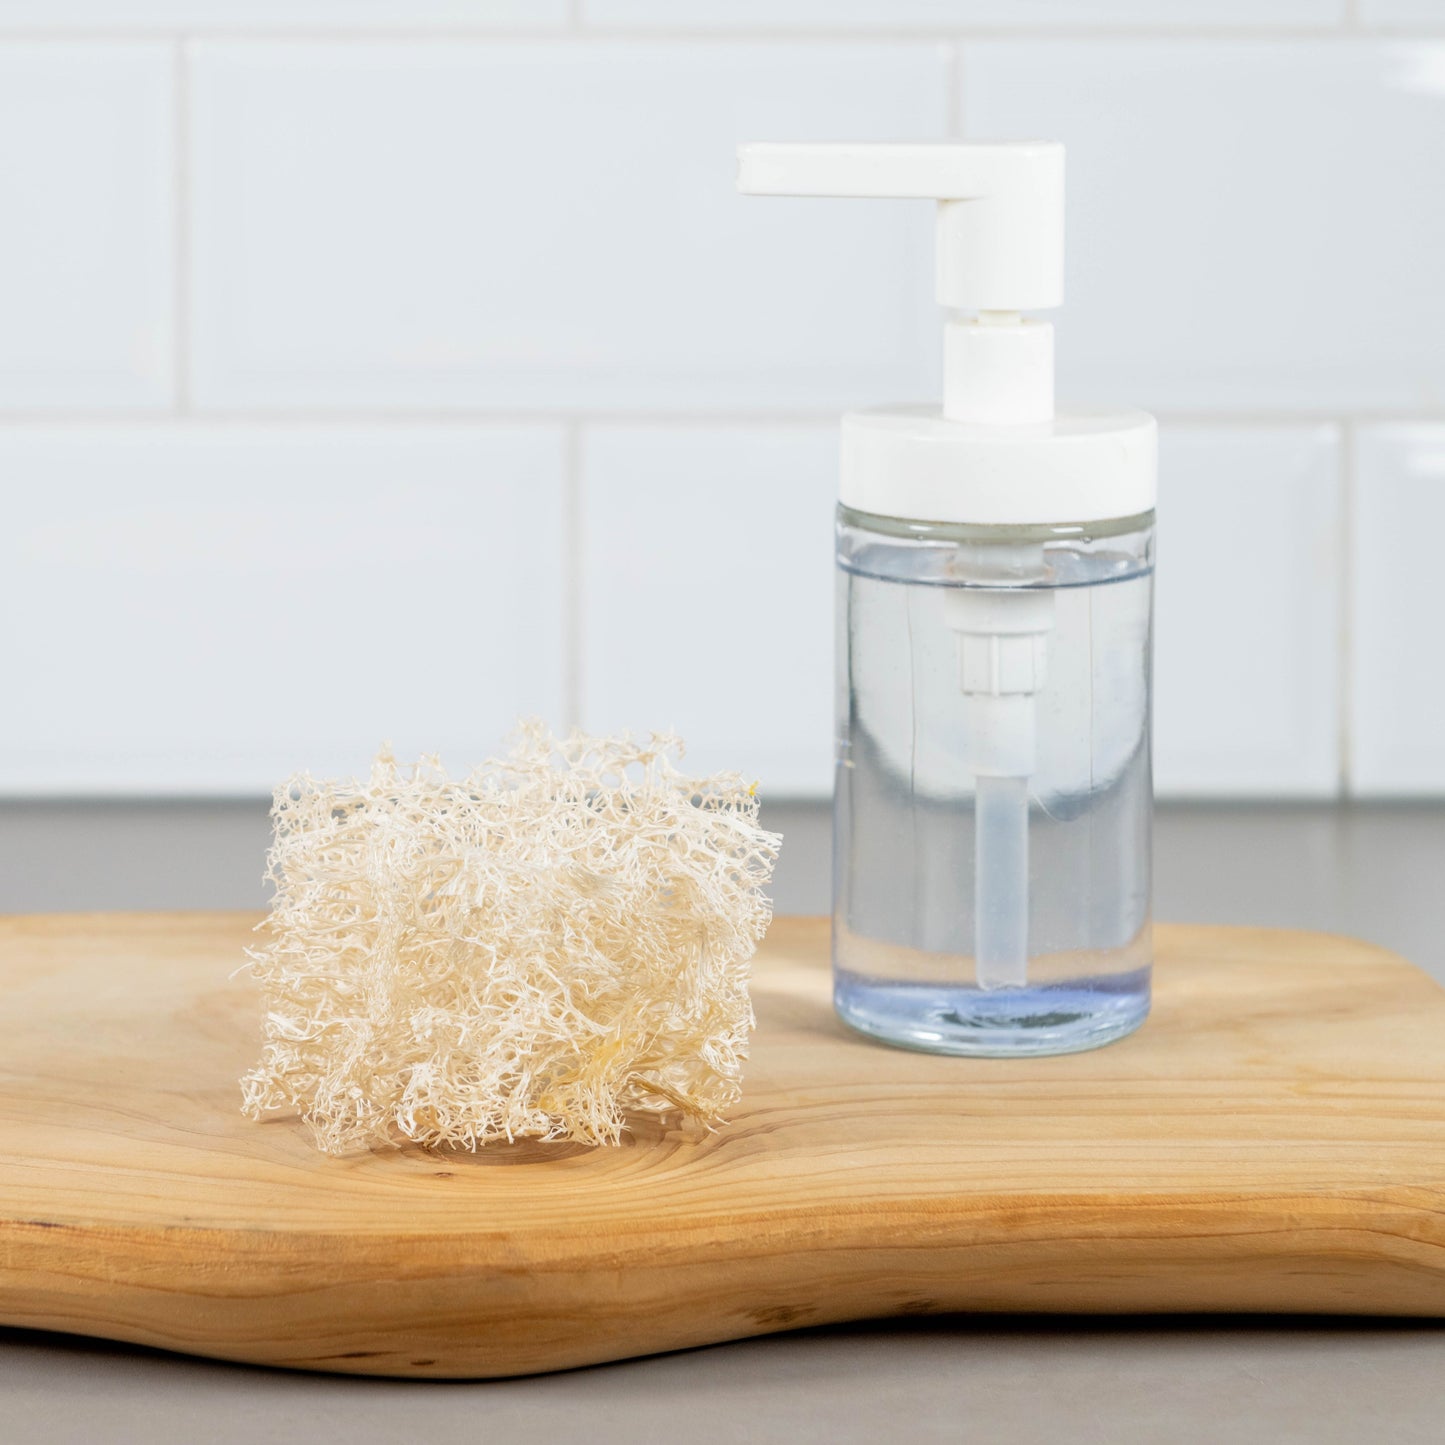 zero waste loofah sponge with liquid detergent